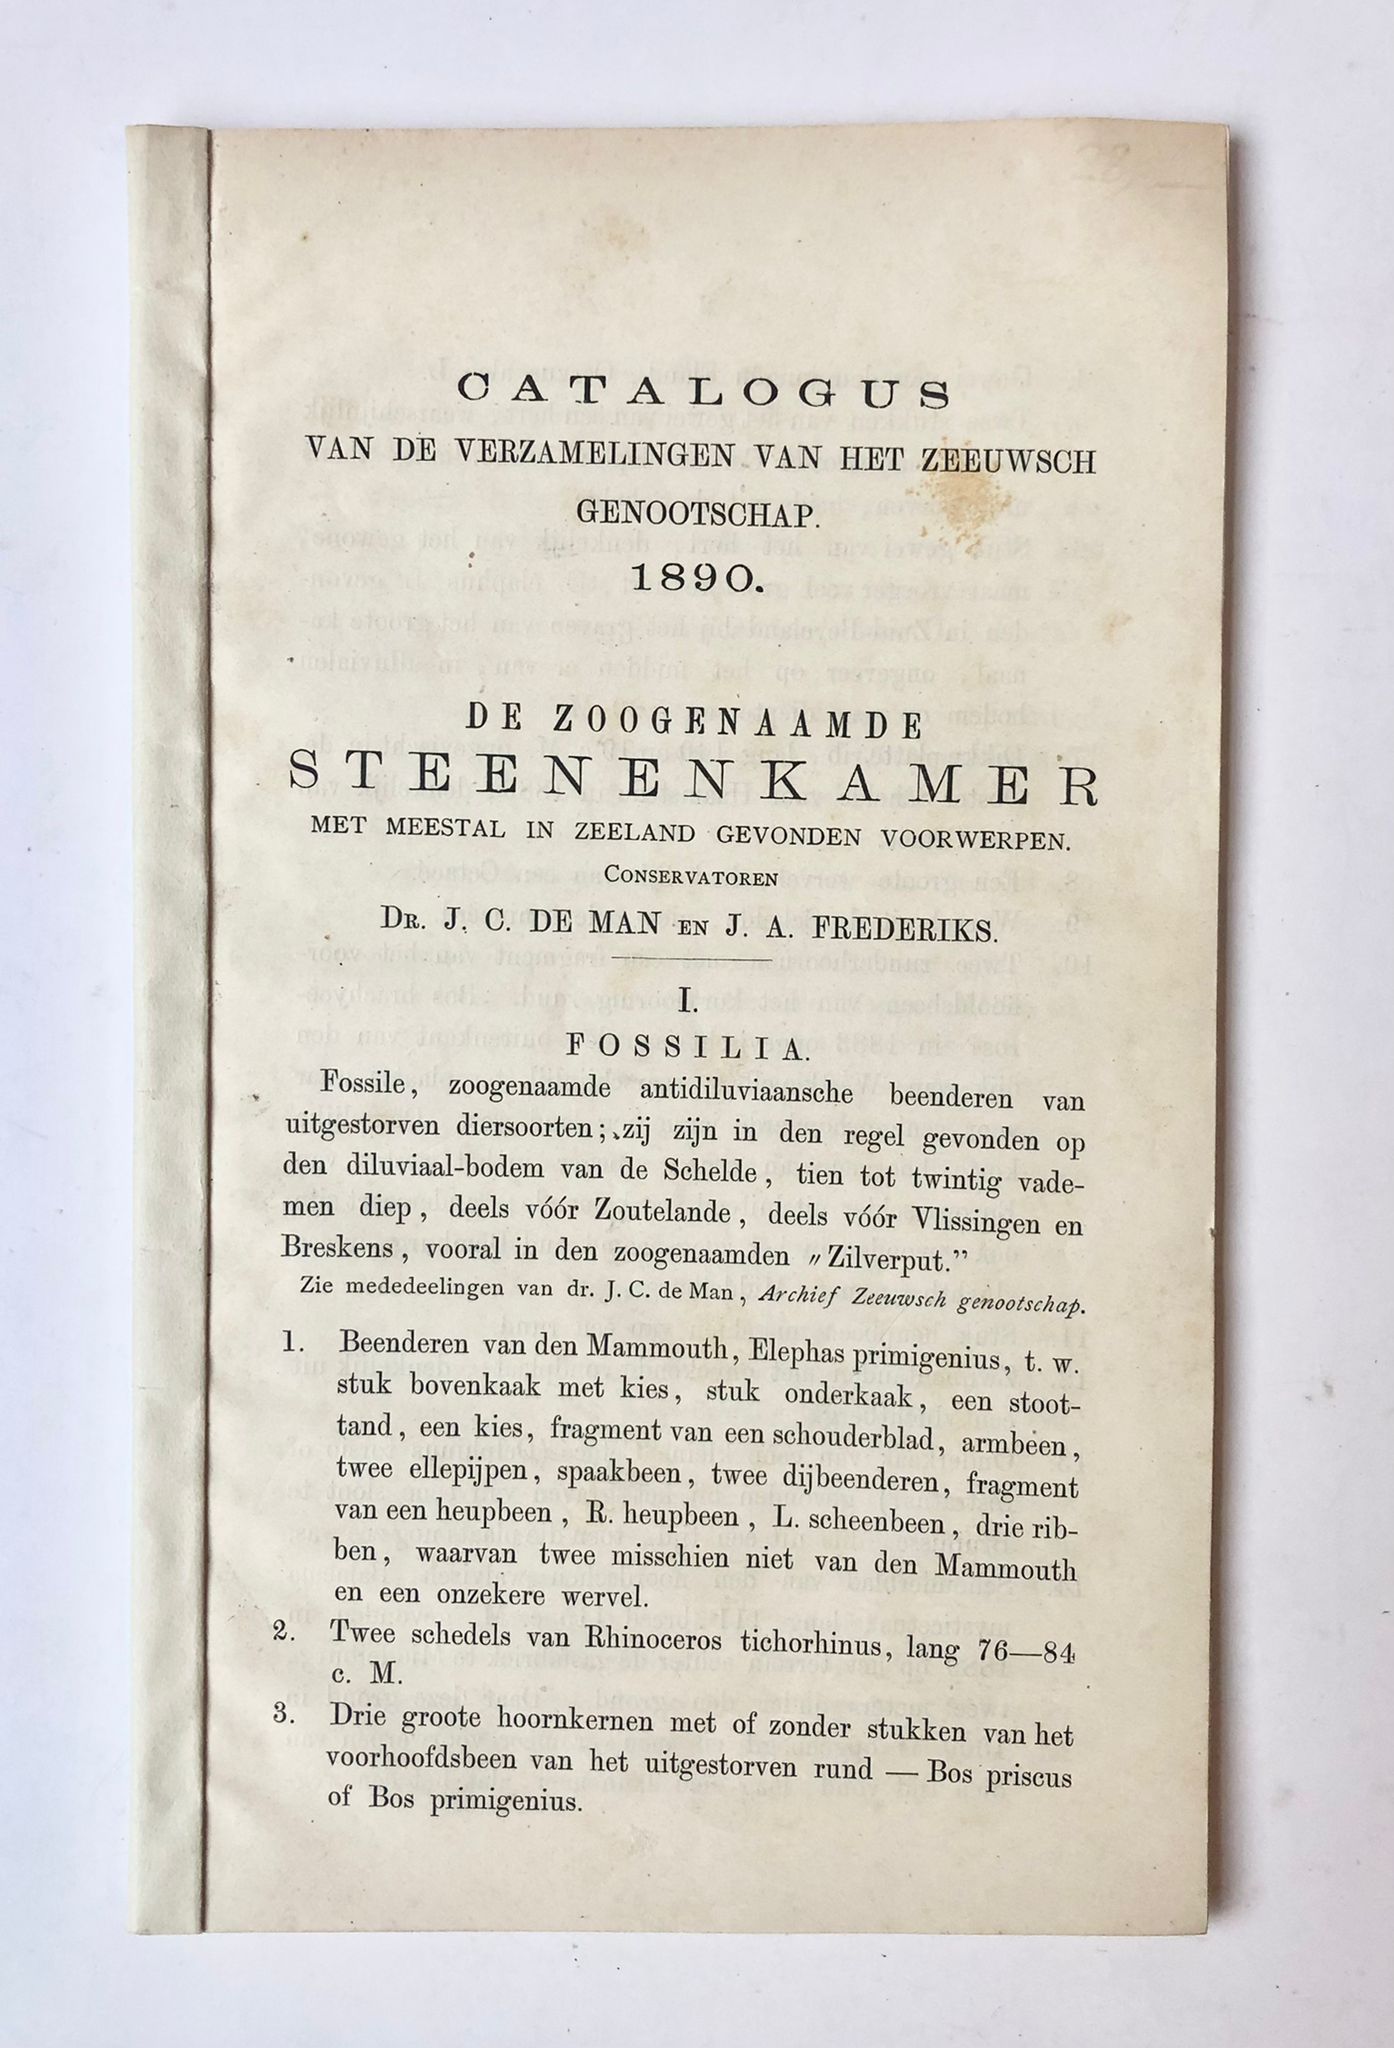 [Zeeland] Catalogus van de verzamelingen van het Zeeuwsch genootschap 1890, de zoogenaamde Steenenkamer met meestal in Zeeland gevonden voorwerpen, Dr. J. C. de Man en J. A. Frederiks, 64 pp.